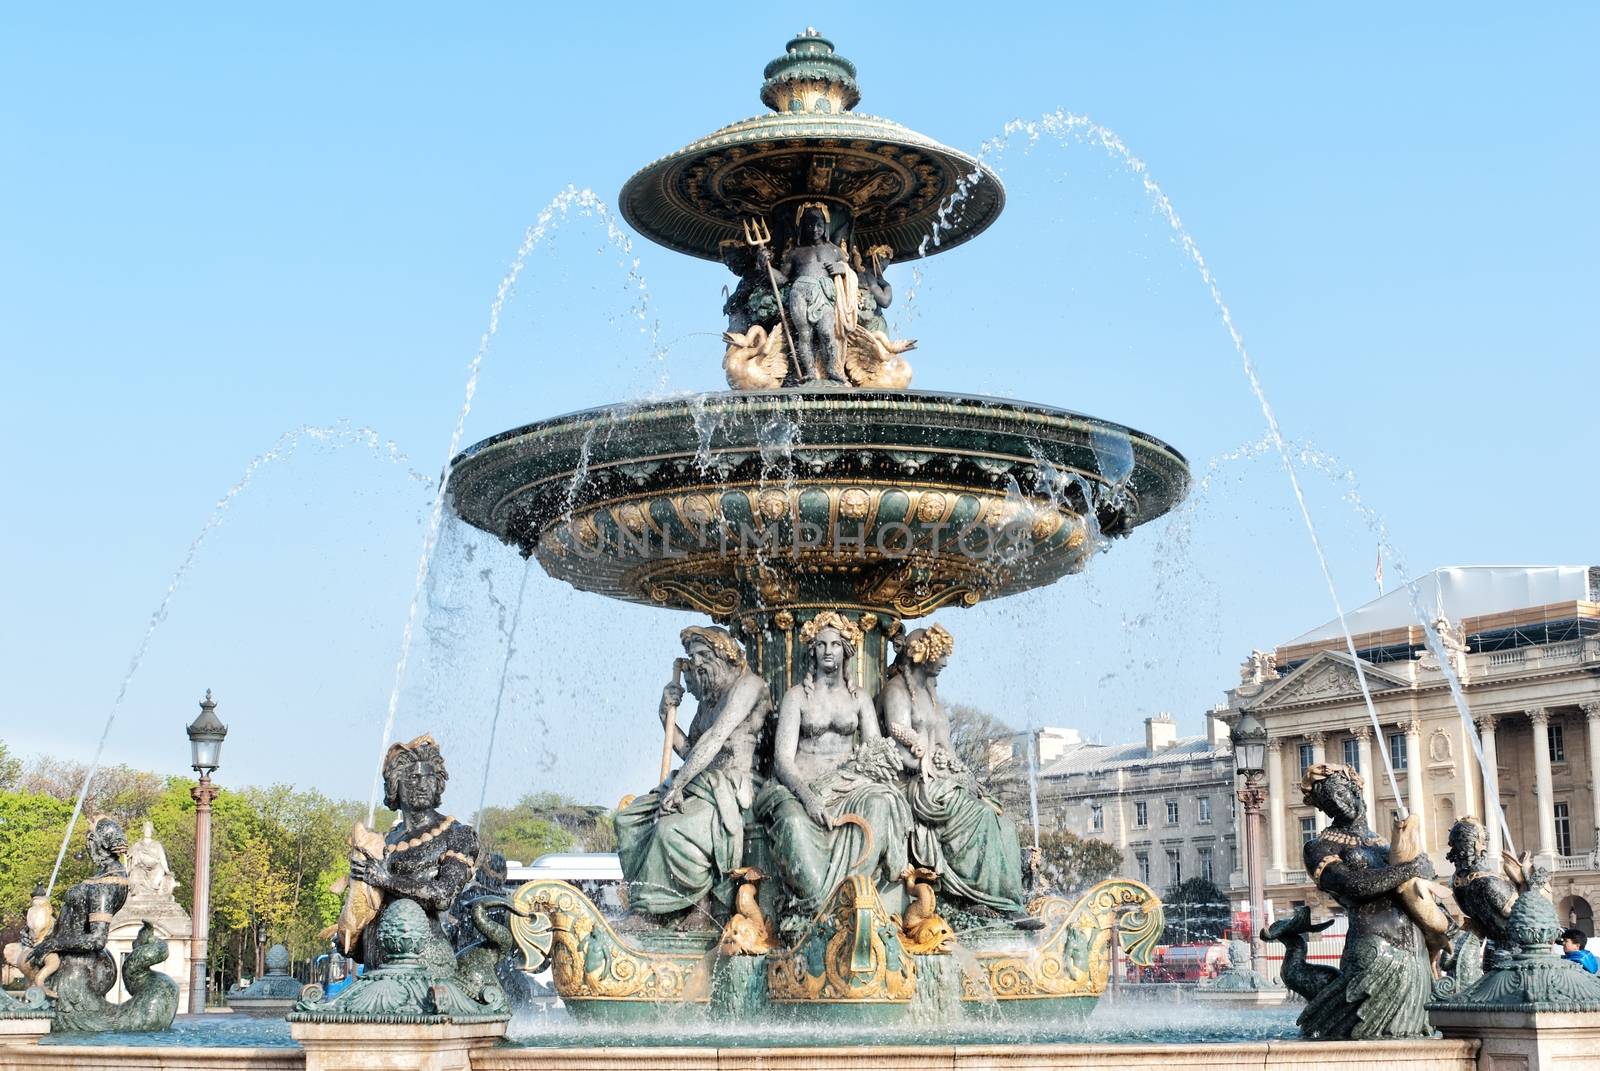 Fountain in Place de la Concorde in Paris by mitakag